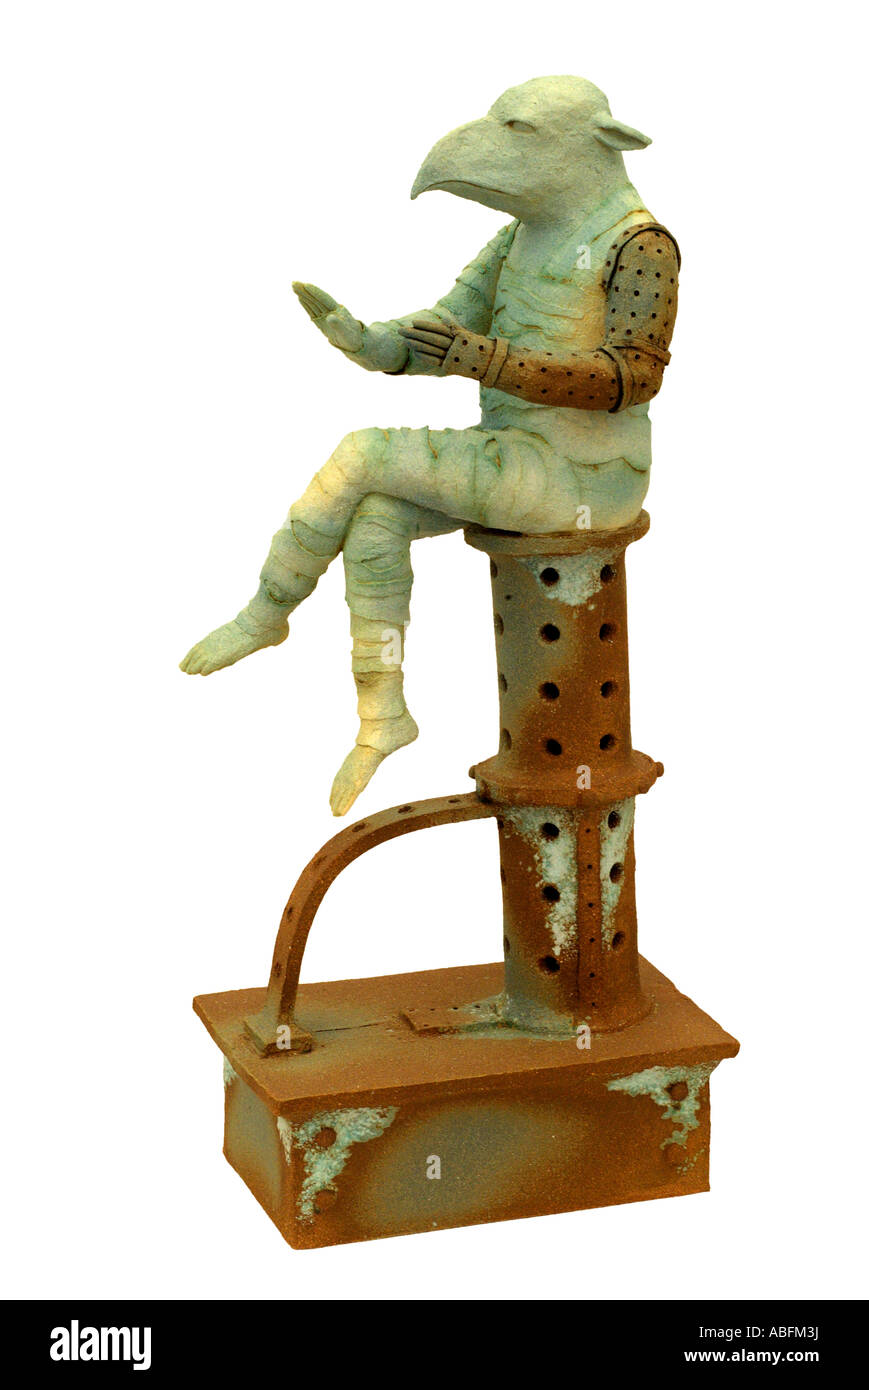 Fantasy figura figurilla otro mundo mundano estatua escultural híbrido humanoide gripe mecánica tecnología tecno ornamento orname Foto de stock